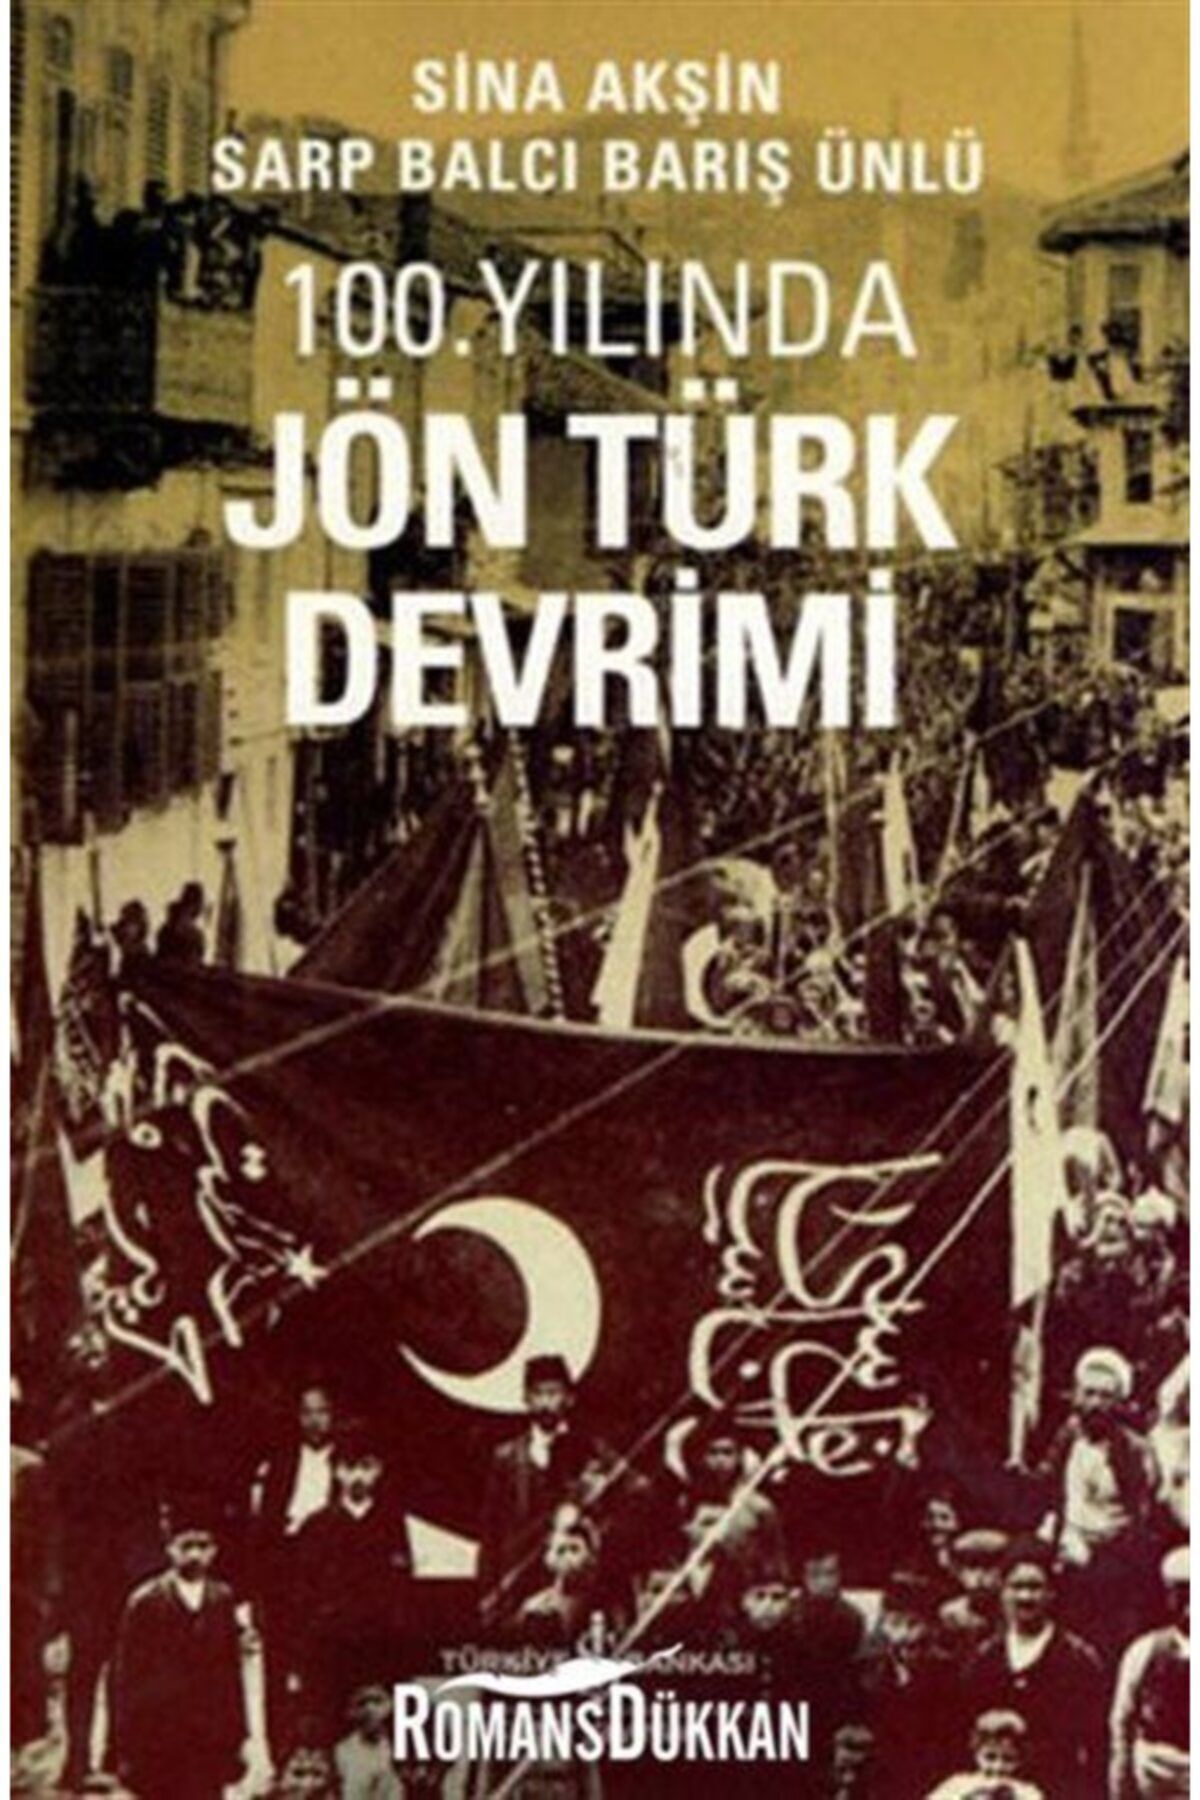 Türkiye İş Bankası Kültür Yayınları 100. Yılında Jön Türk Devrimi